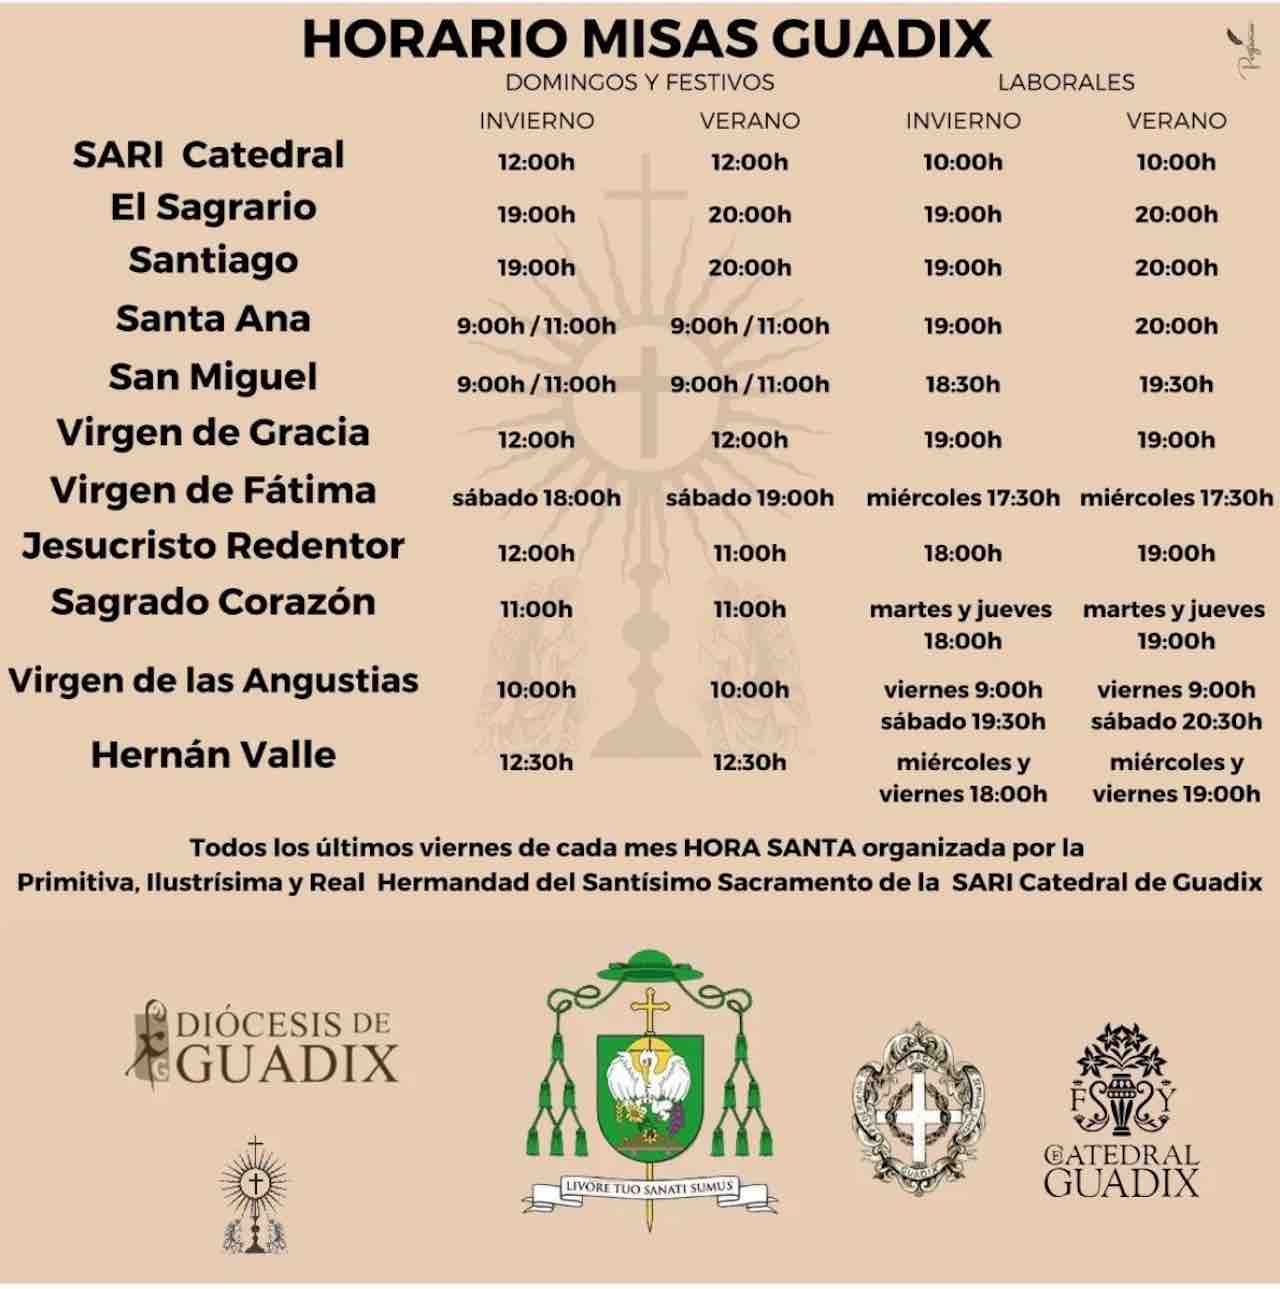 Horario de Misas en Guadix